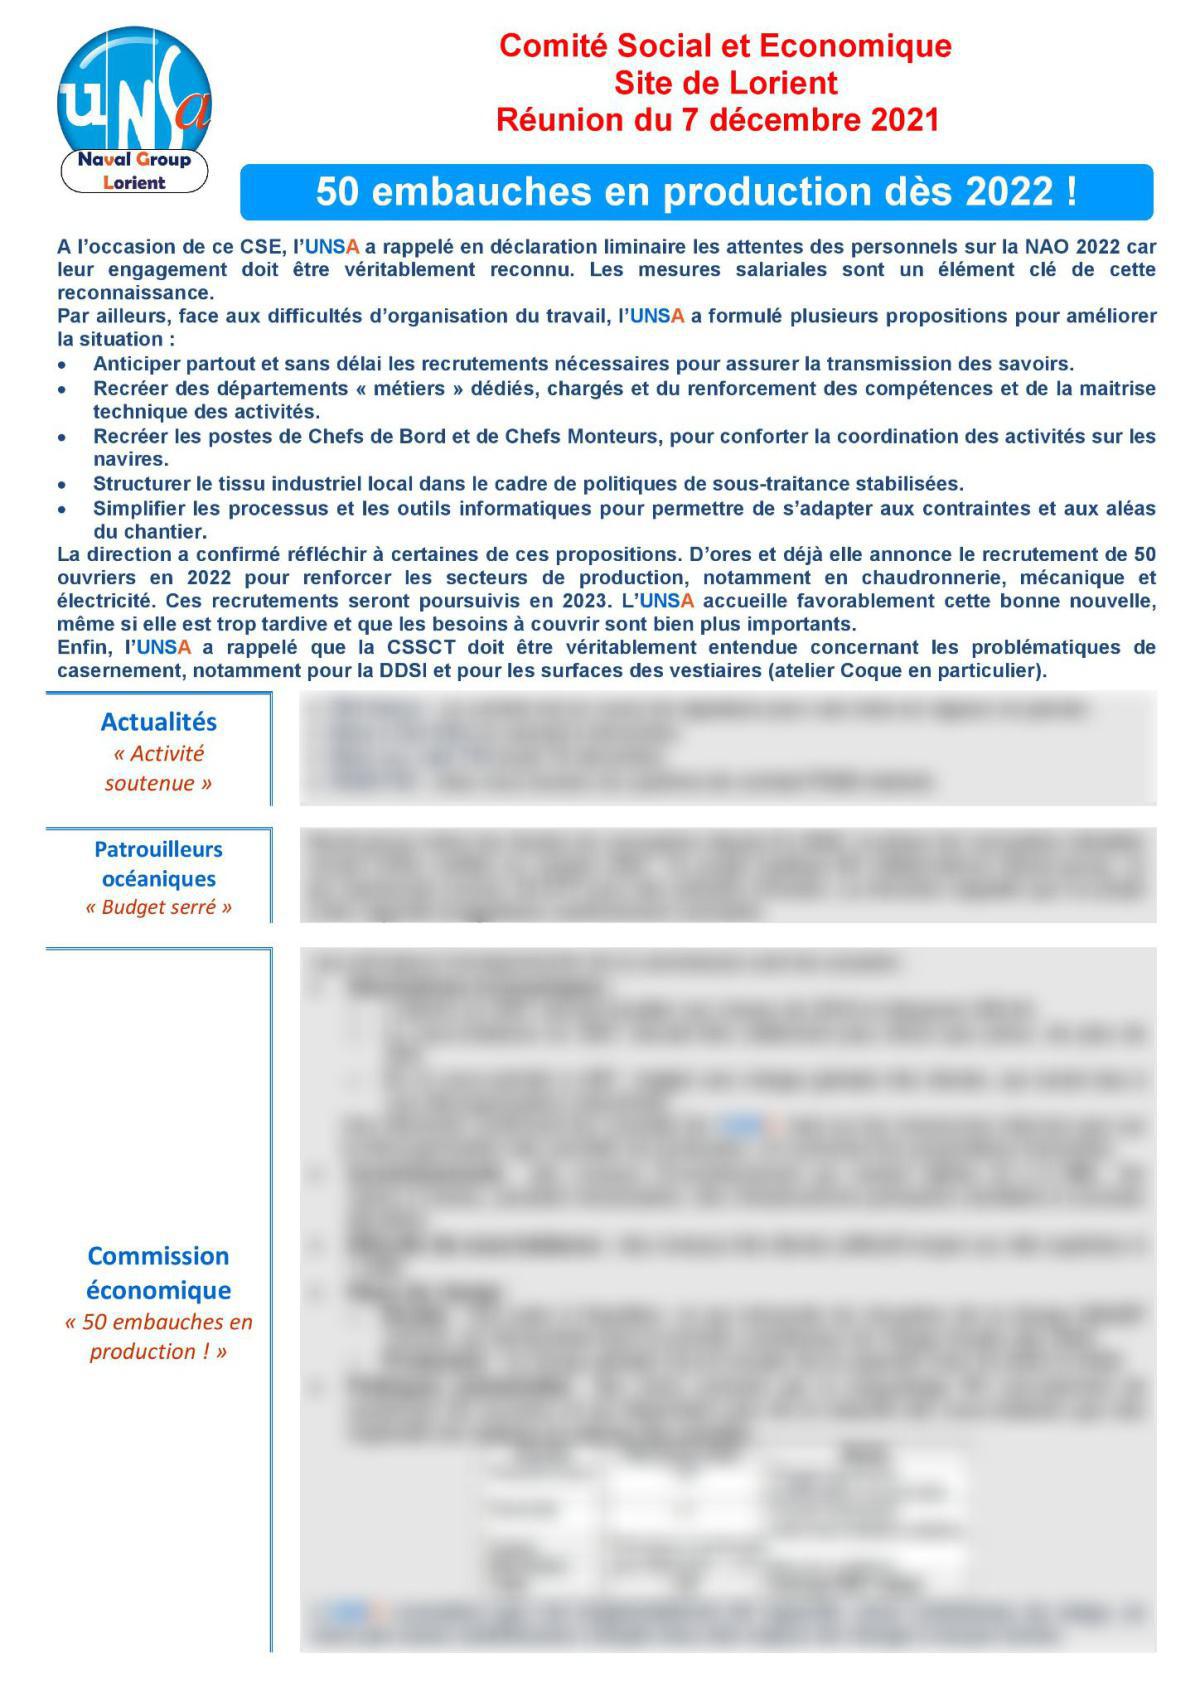 CSE de Lorient - réunion du 7 décembre 2021 - Compte rendu